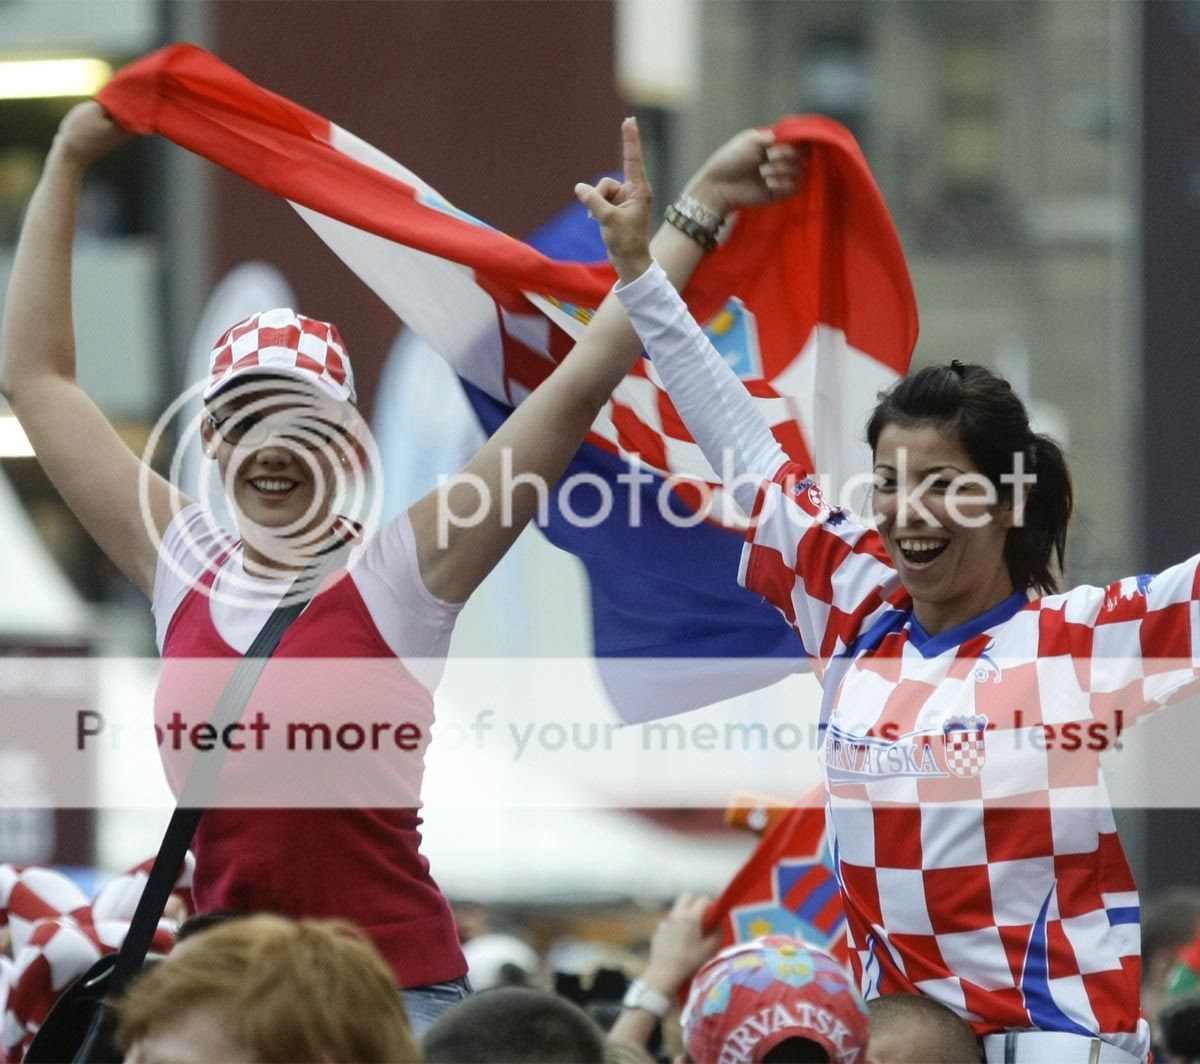 Croatian soccer fans celeb